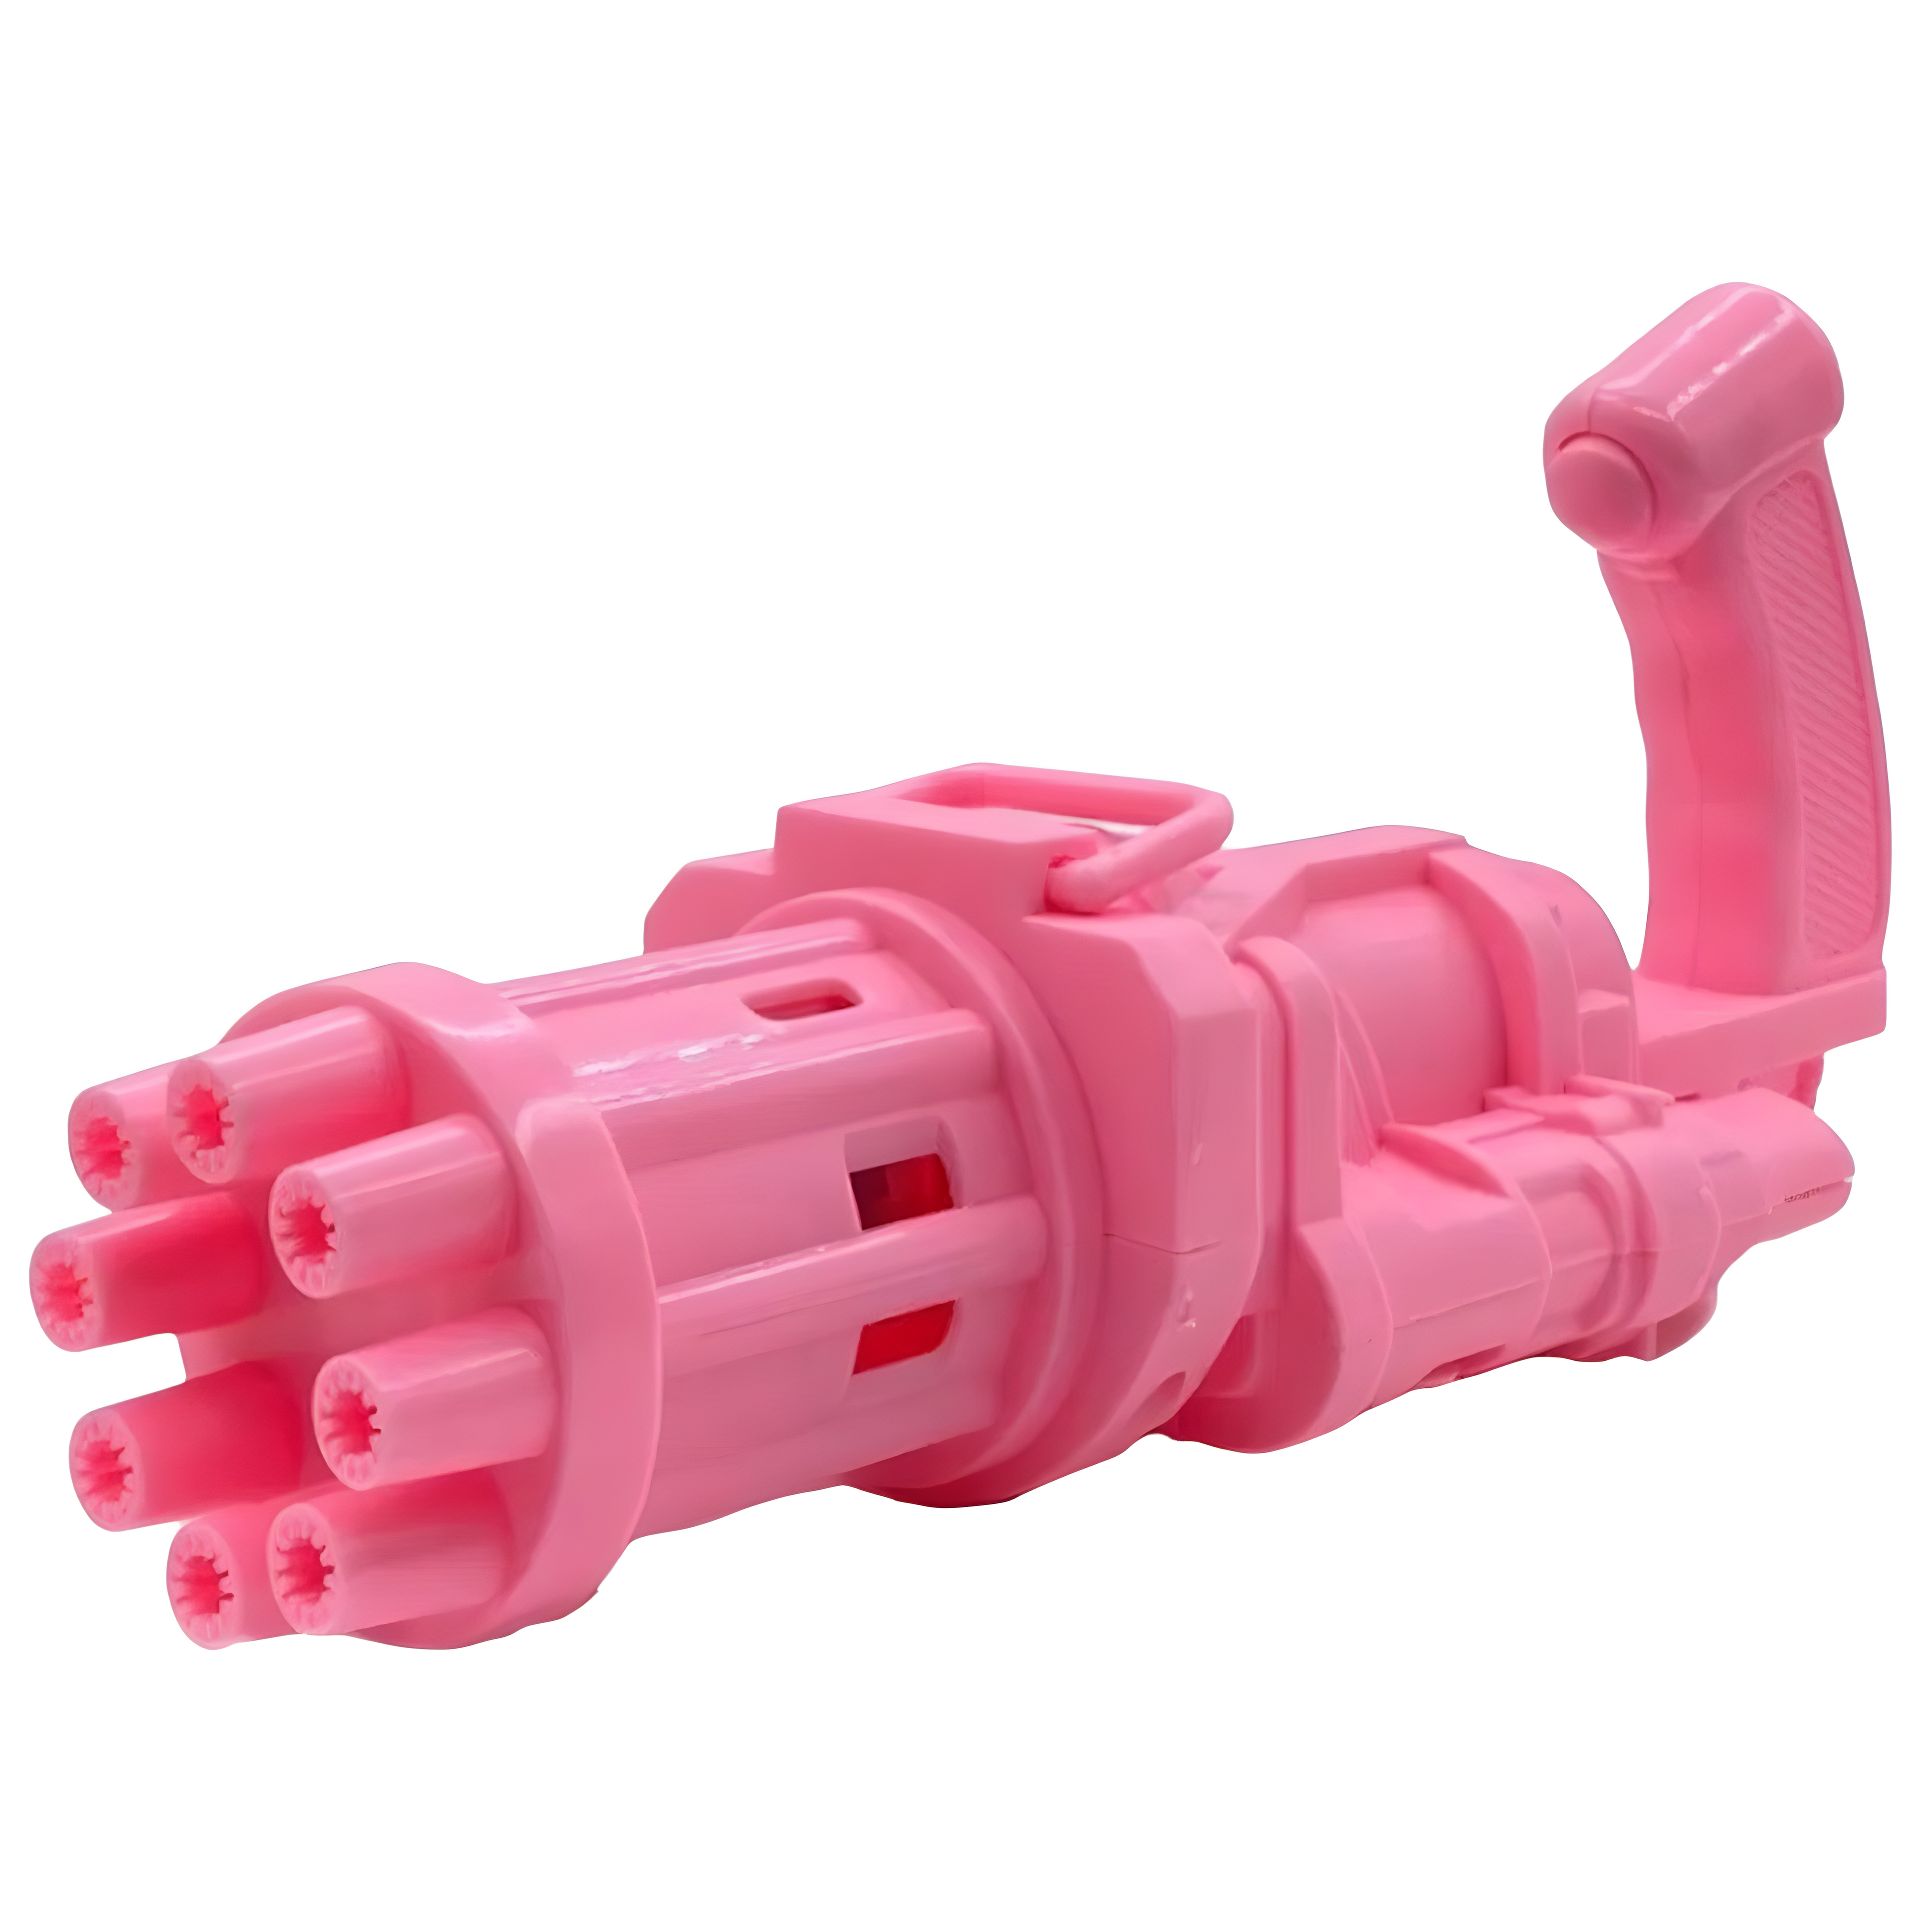 Пулемет для мыльных пузырей Bubble Fun Blaster черный и розовый (1443329696) - фото 3